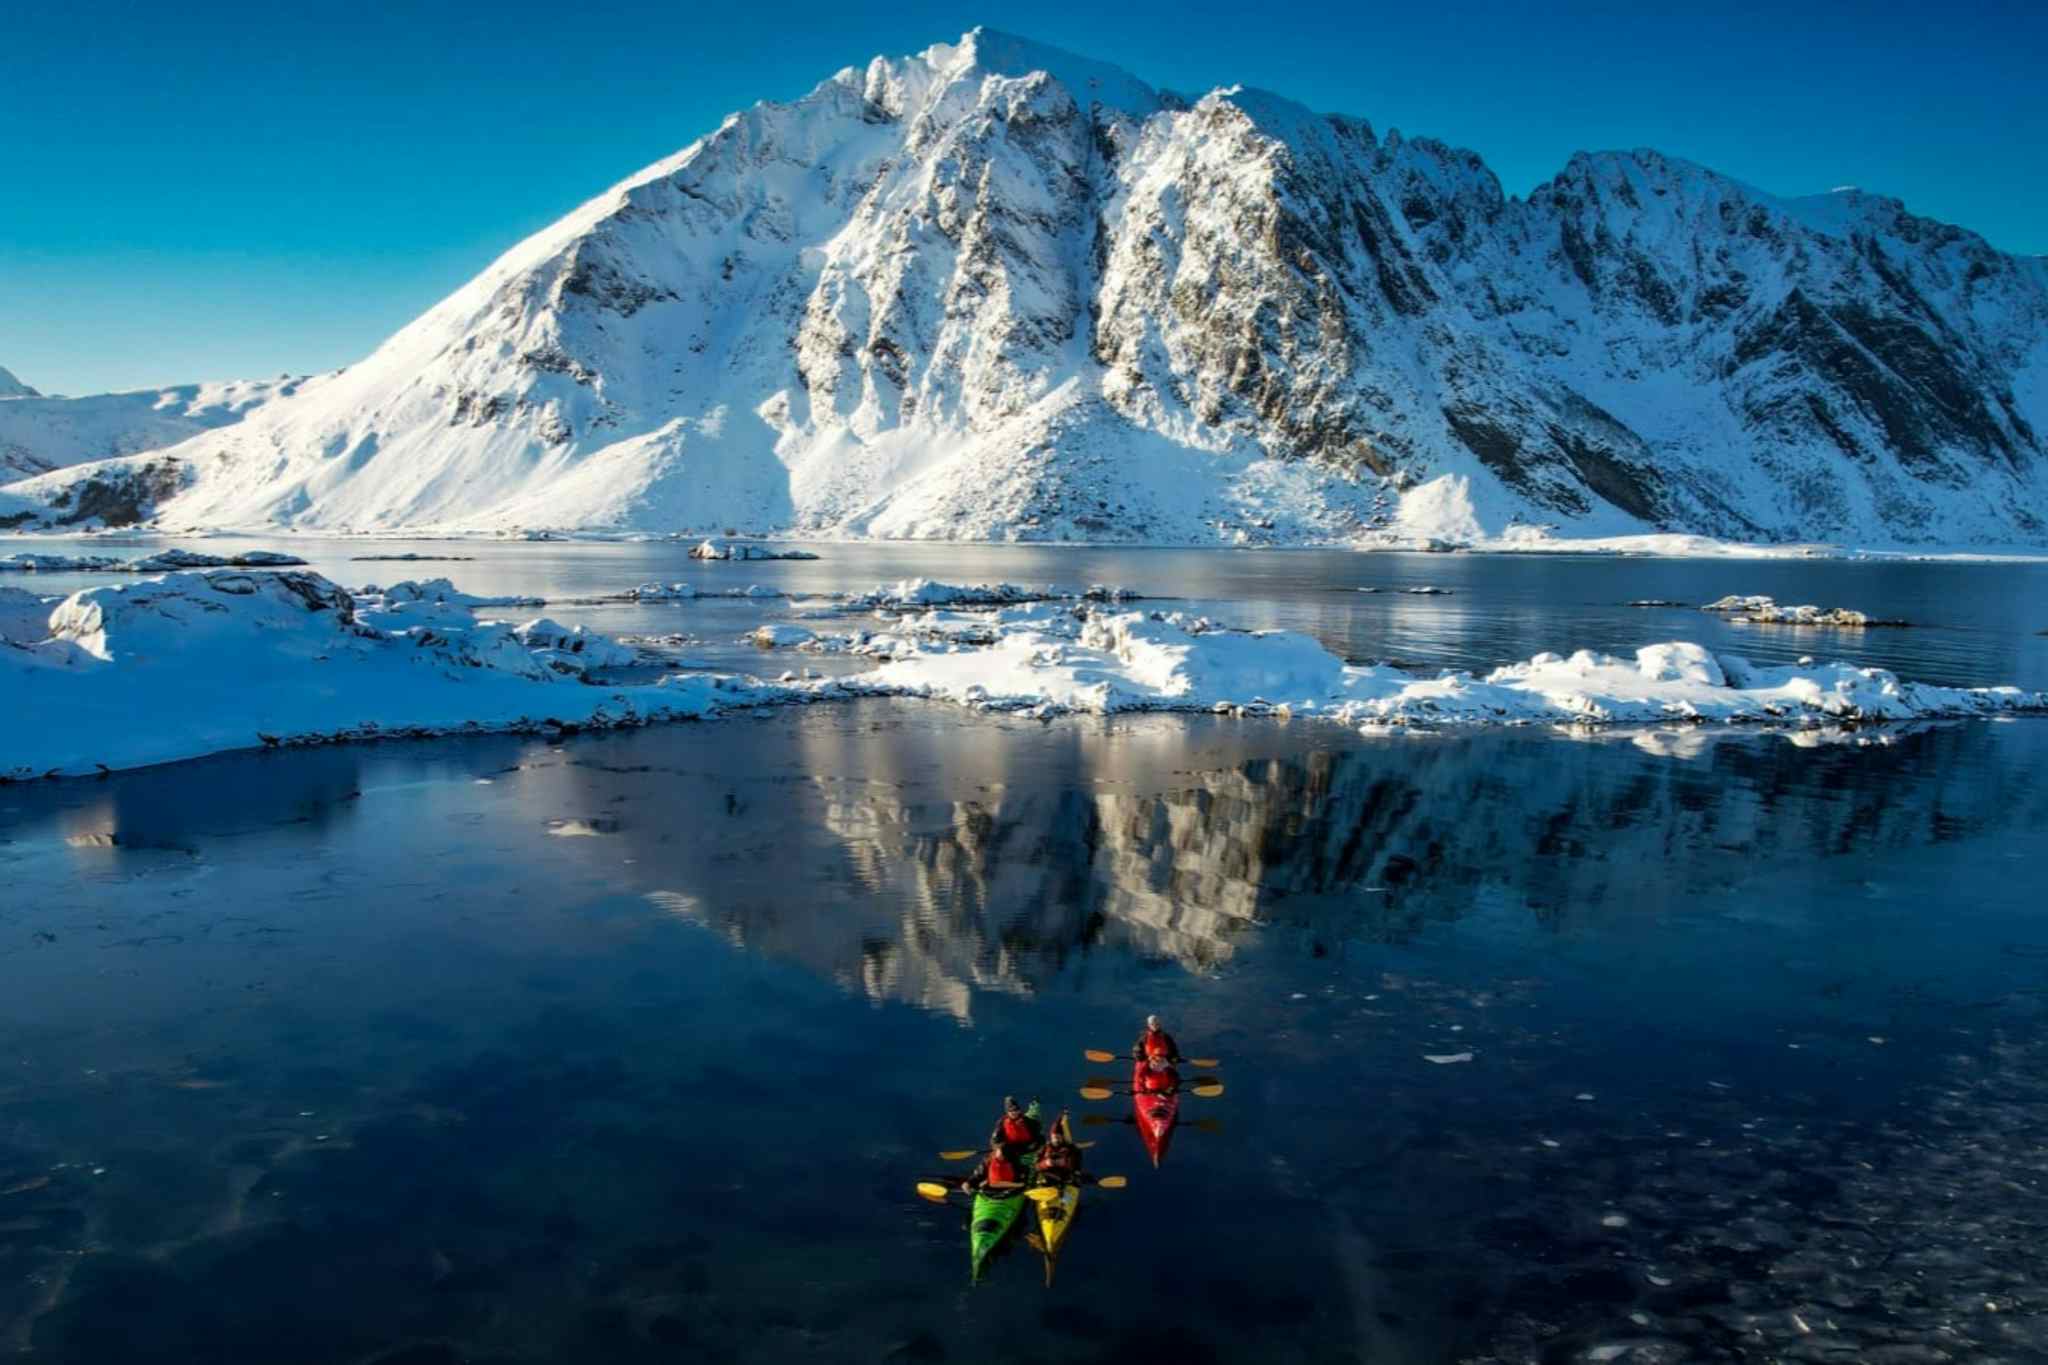 Lofoten Islands kayaking in winter, Norway. Photo: Host/Northern Explorer